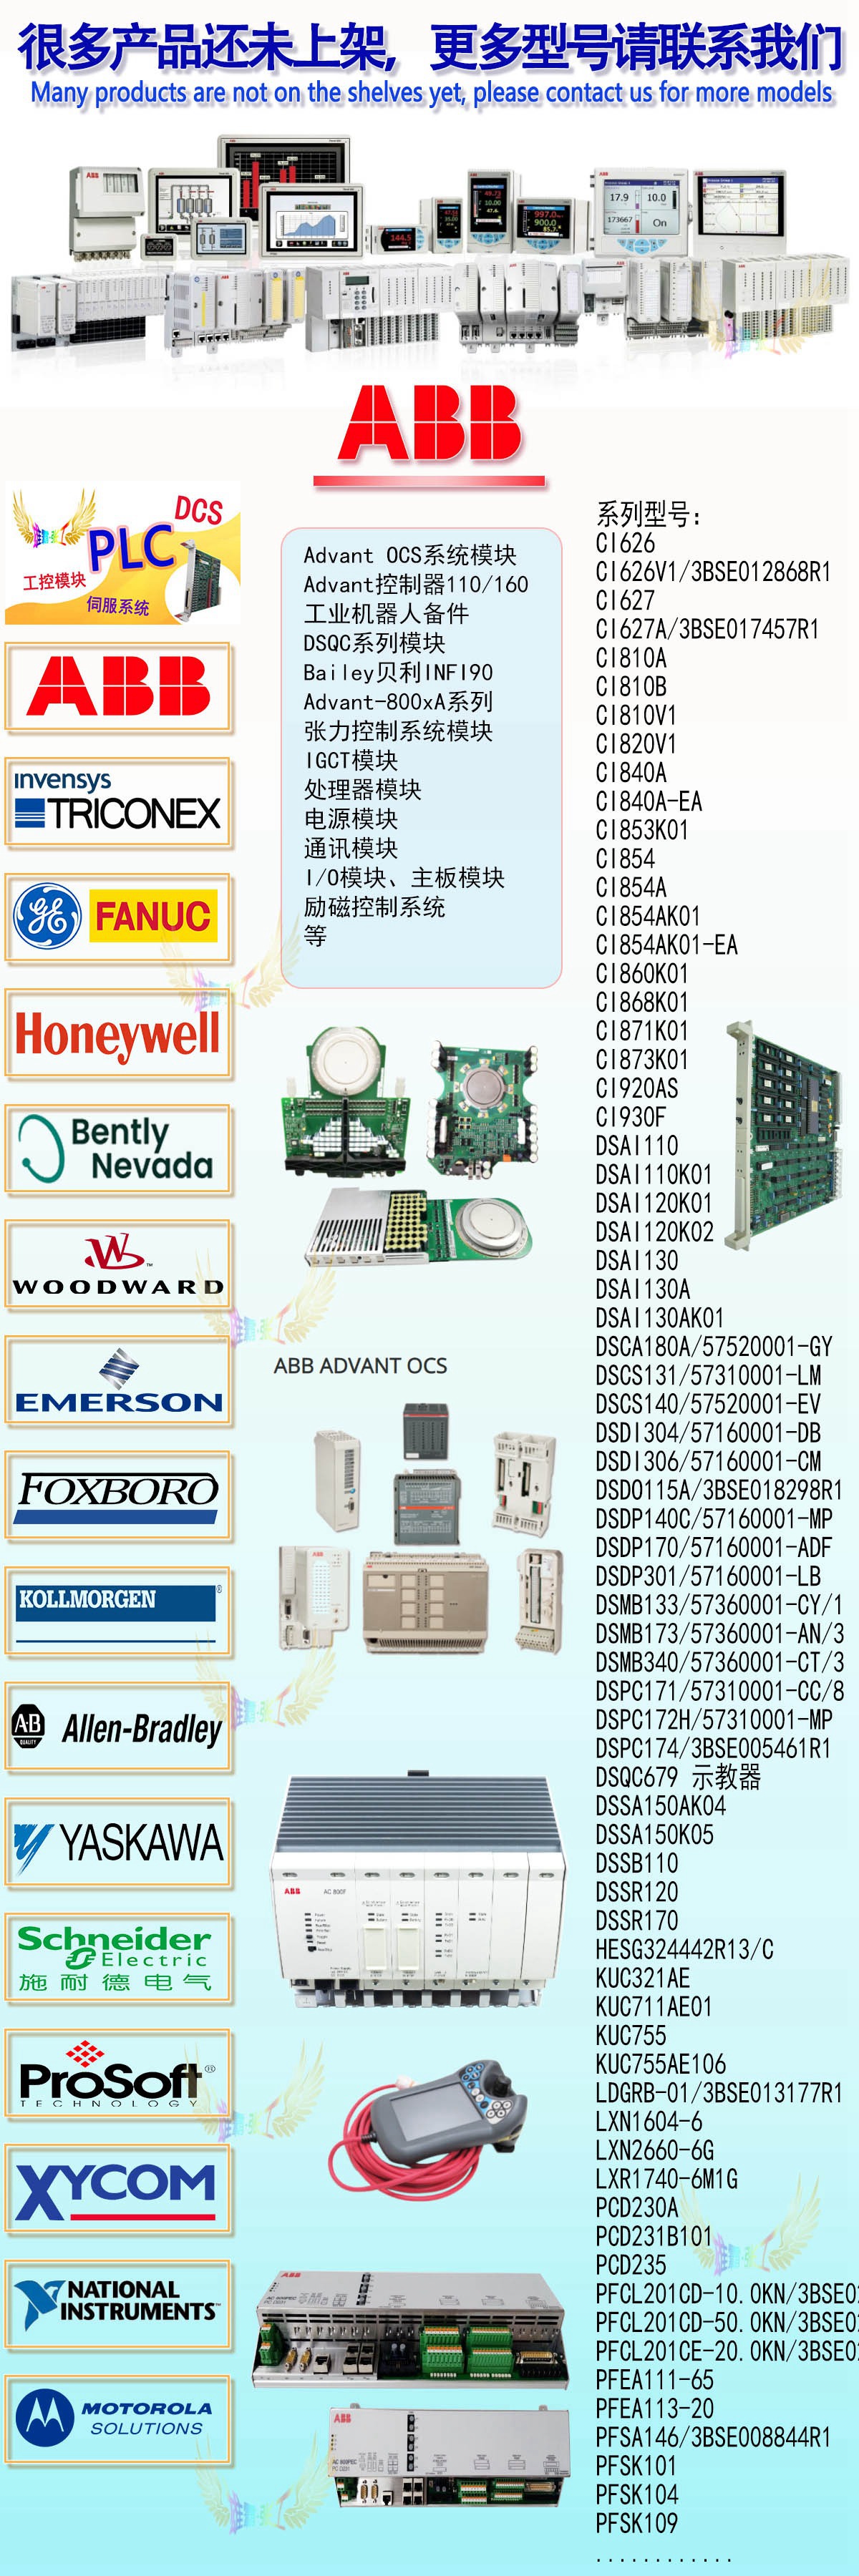 霍尼韦尔CC-TCNT01 输入输出控制器 51308307-175 